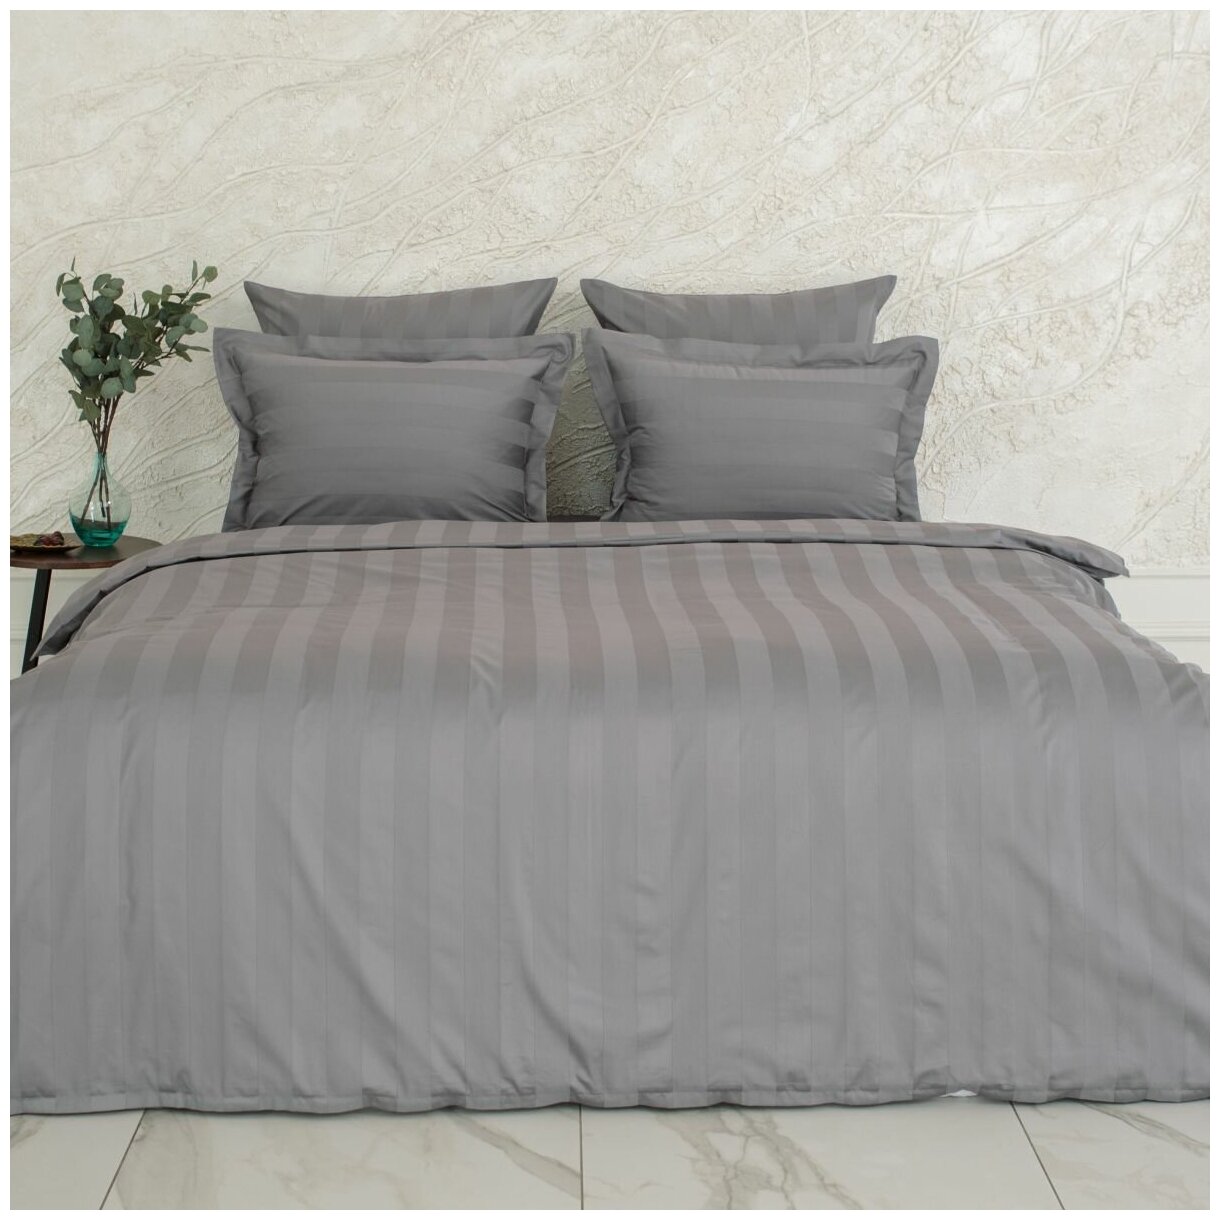 Комплект постельного белья La Prima постельное бельё мако-сатин антрацит, размер Евро (200x220см)